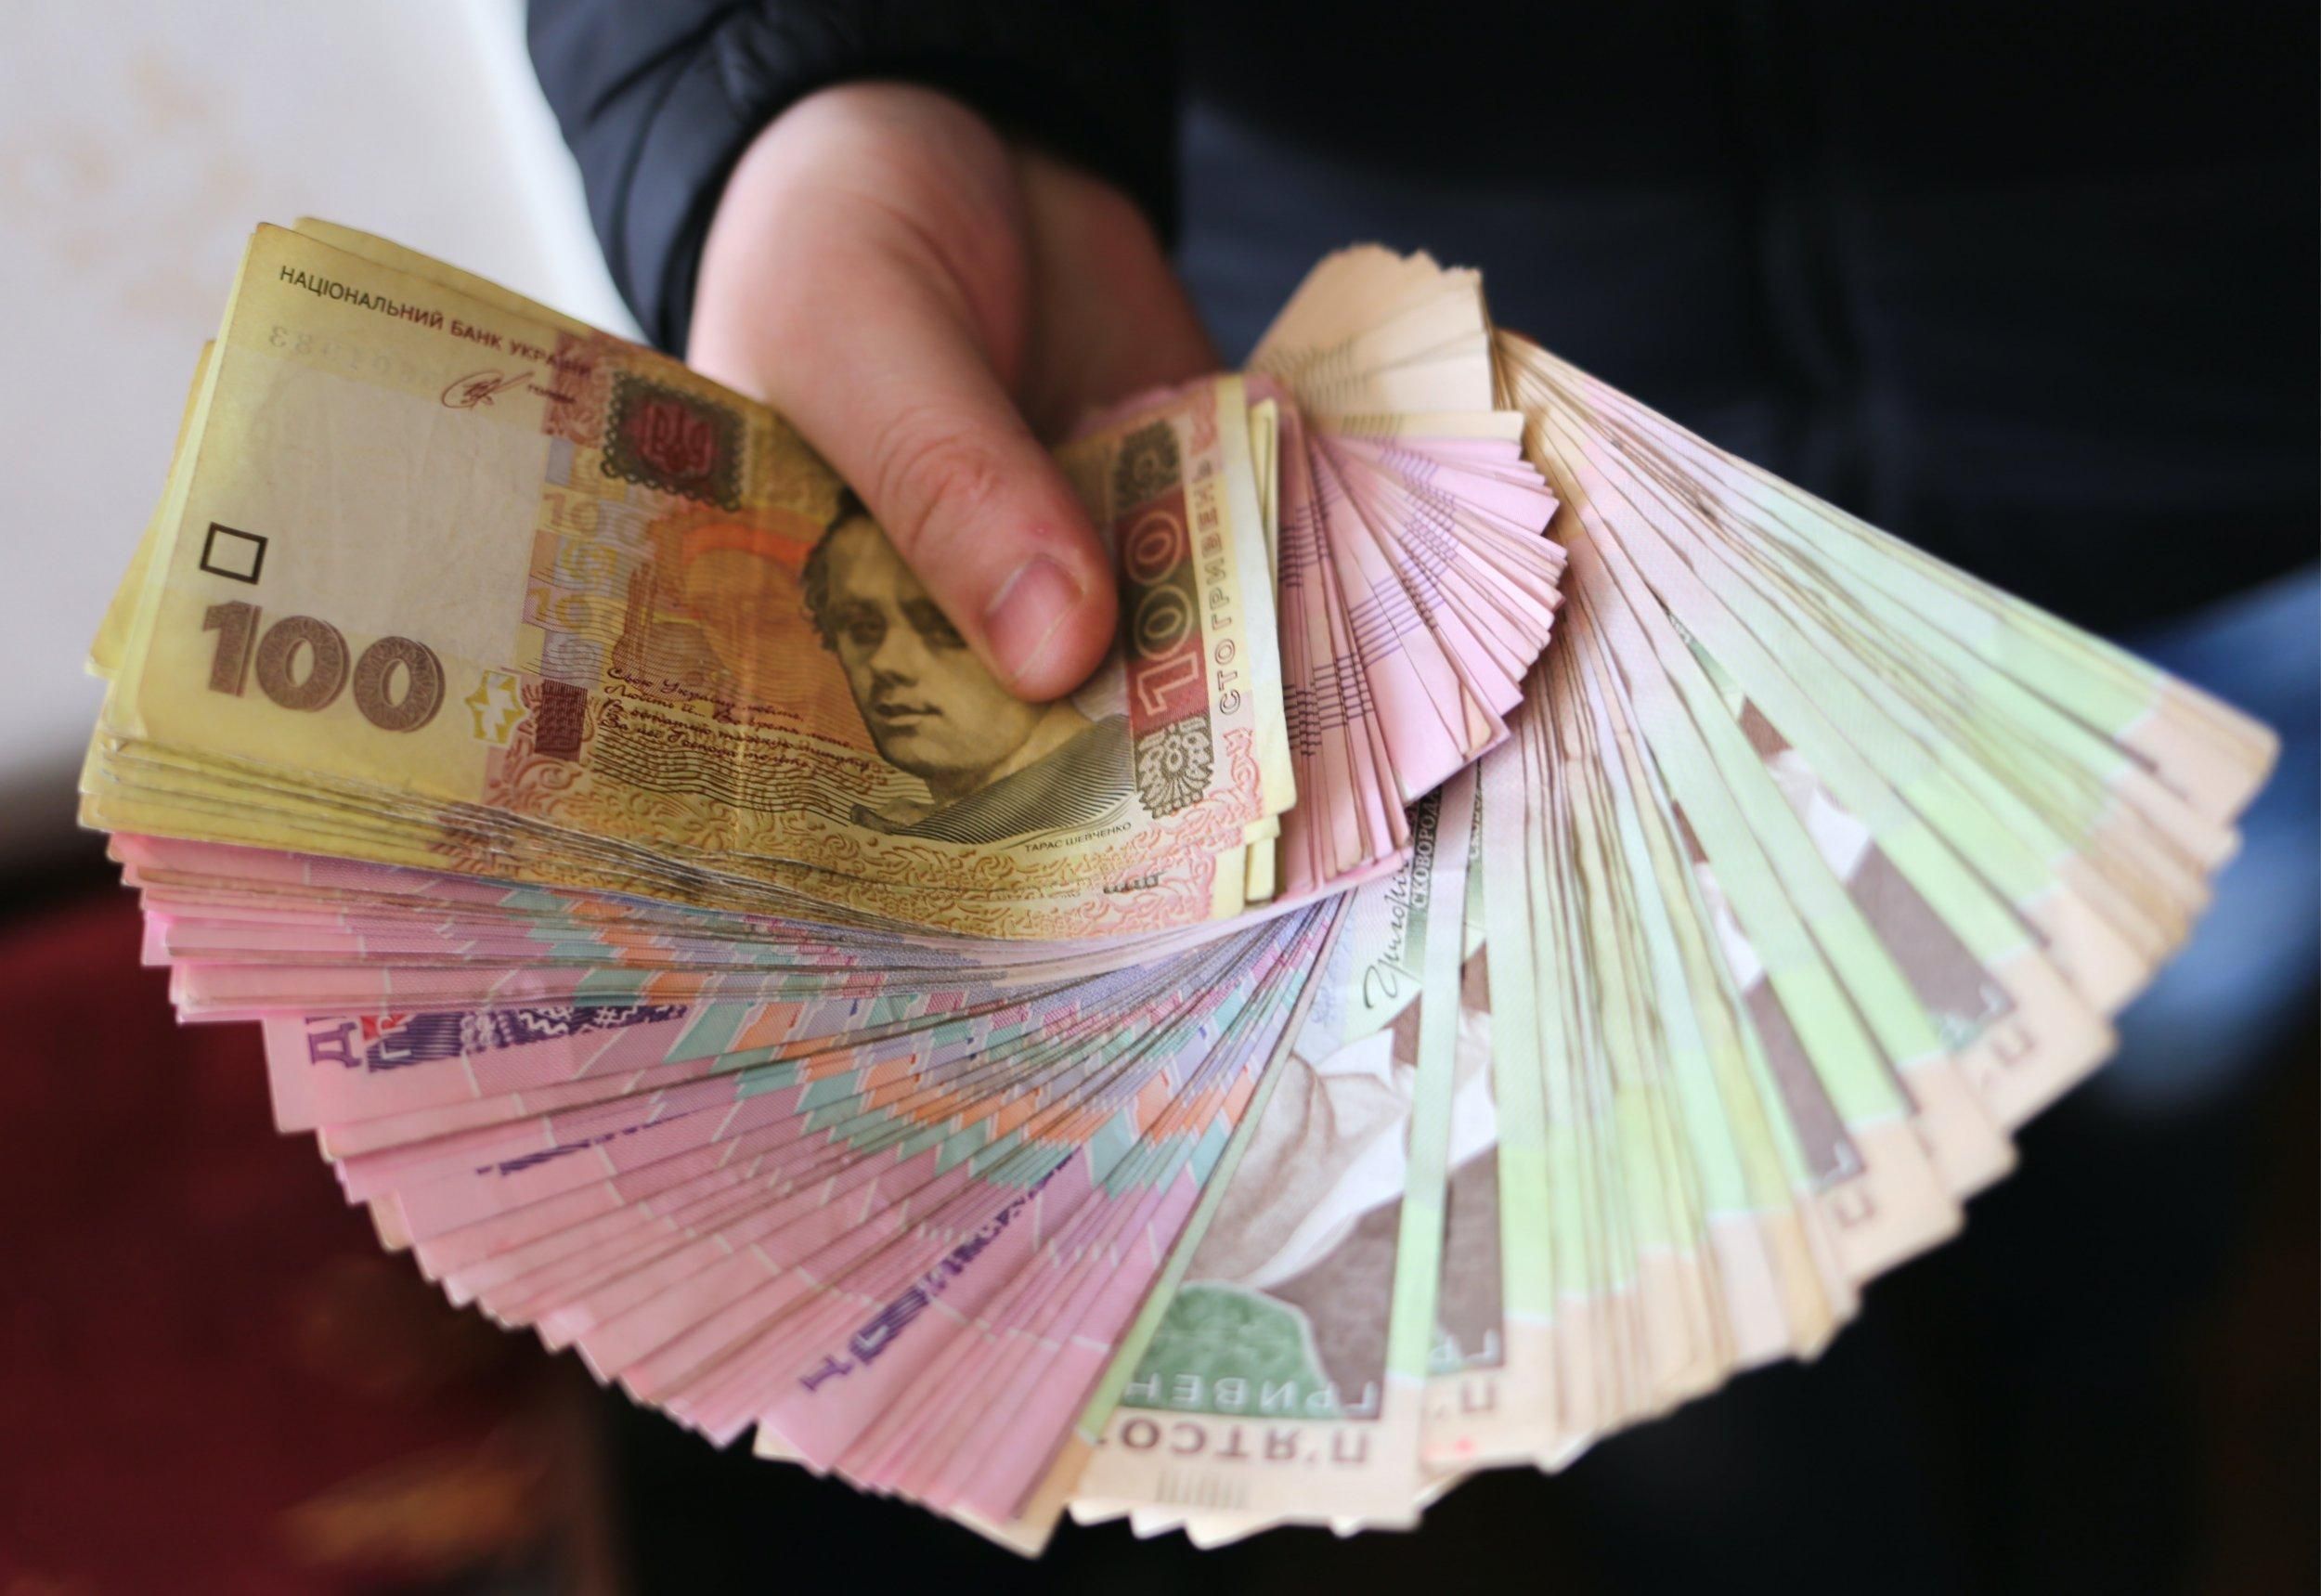 Сколько бюджет-2021 недополучил от лицензий на игорный бизнес: данные Опендатабот - Новости экономики Украины - Экономика